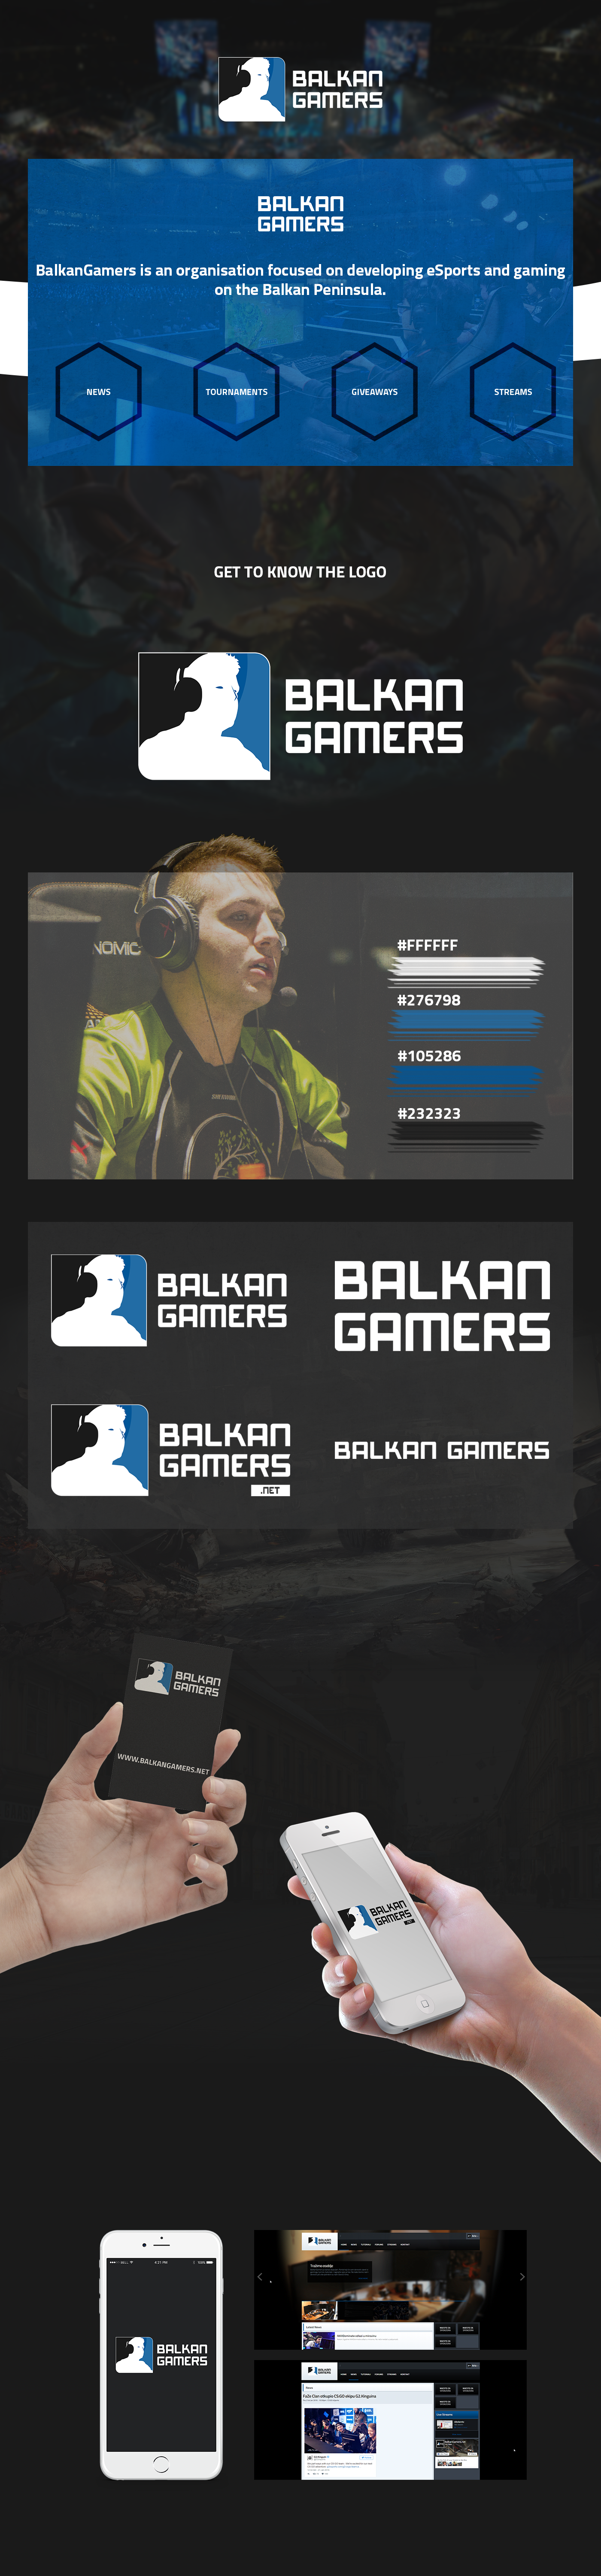 Logo Design Gaming esports BalkanGamers BalkanGamers.net ario